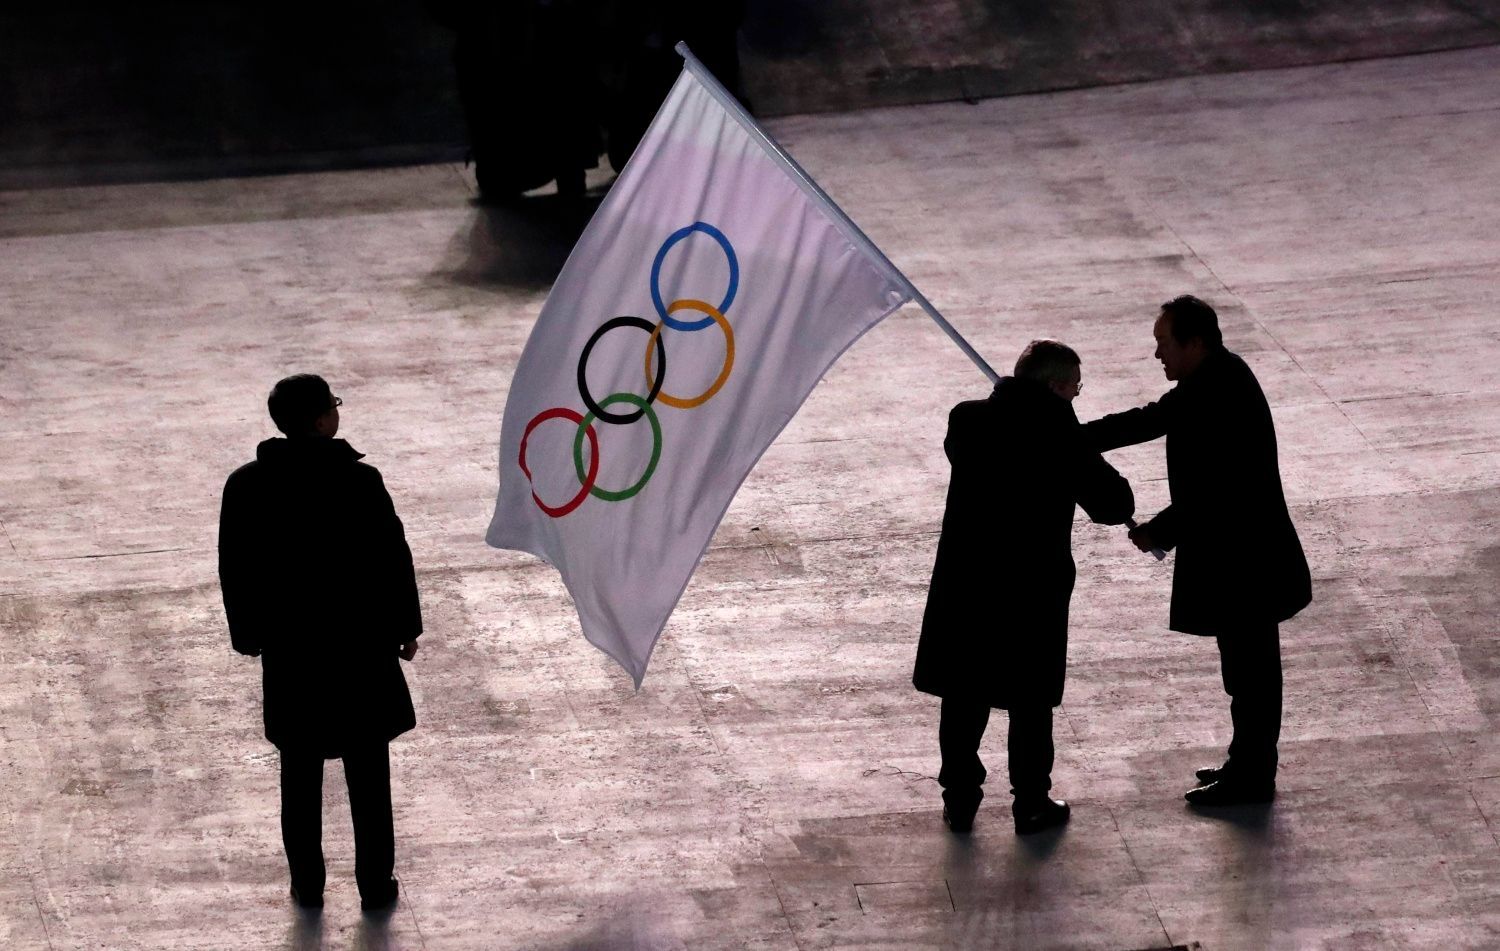 Slavností zakončení ZOH 2018: starosta Pchjongčchangu předává olympijskou vlajku starostovi Pekingu